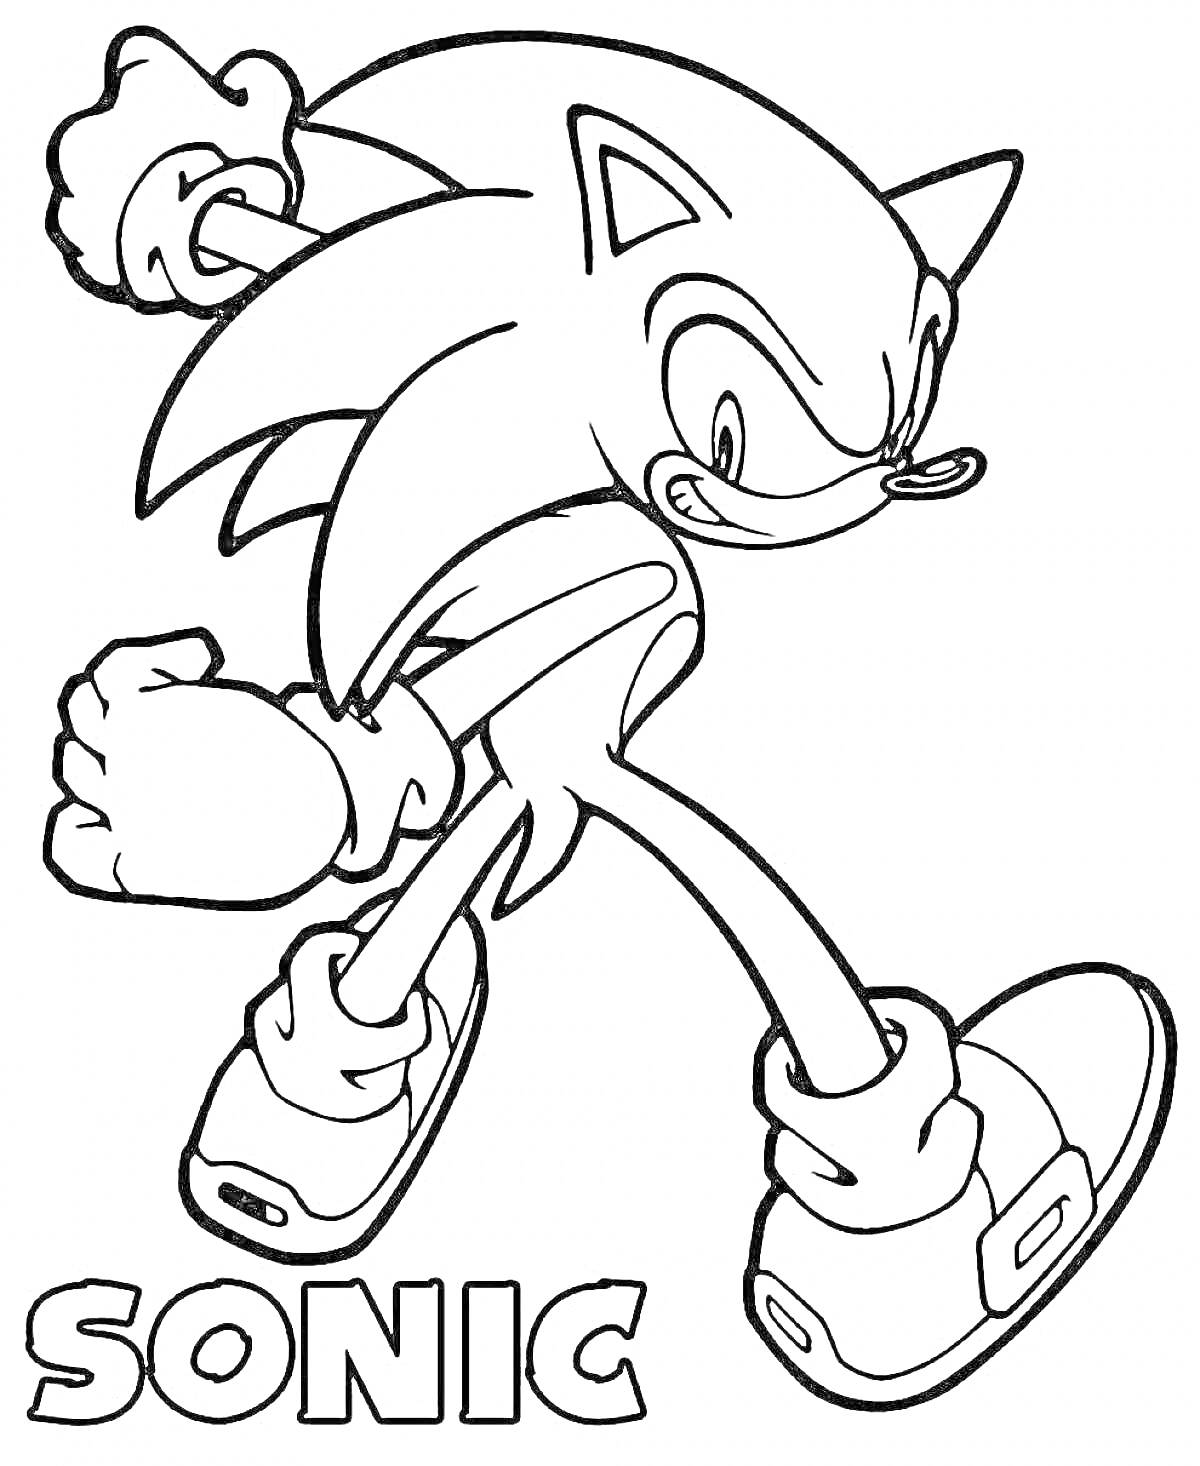 Раскраска Sonic, ёж, стоит с поднятыми руками и сжатым кулаком, в кроссовках с пряжками, надпись 